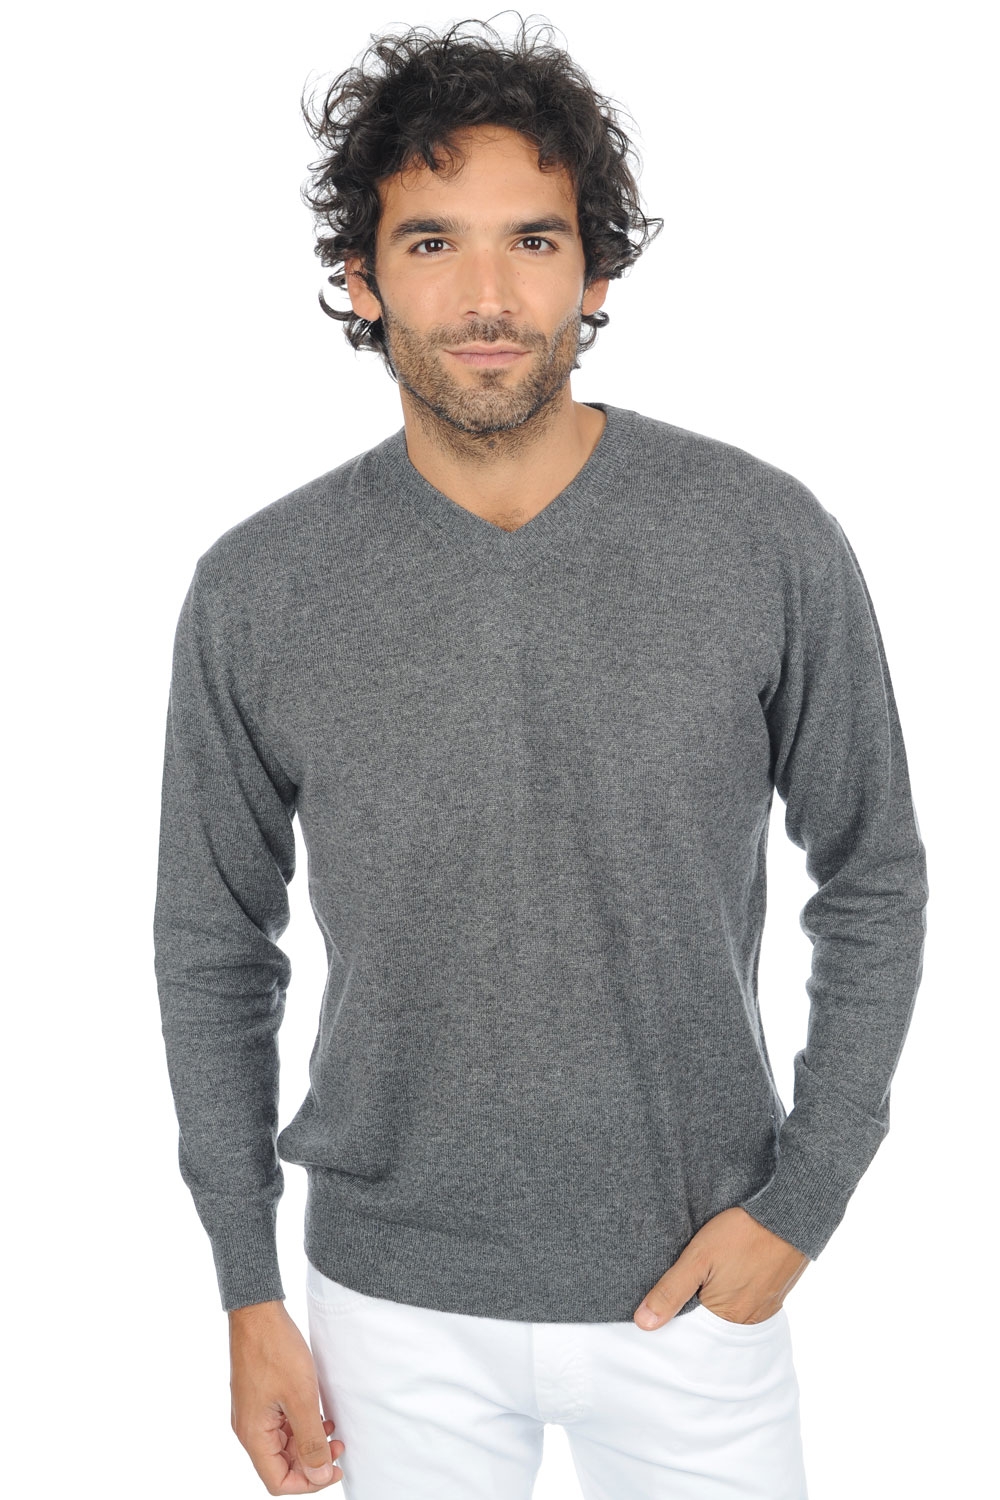 Cashmere men premium sweaters gaspard premium premium graphite 2xl